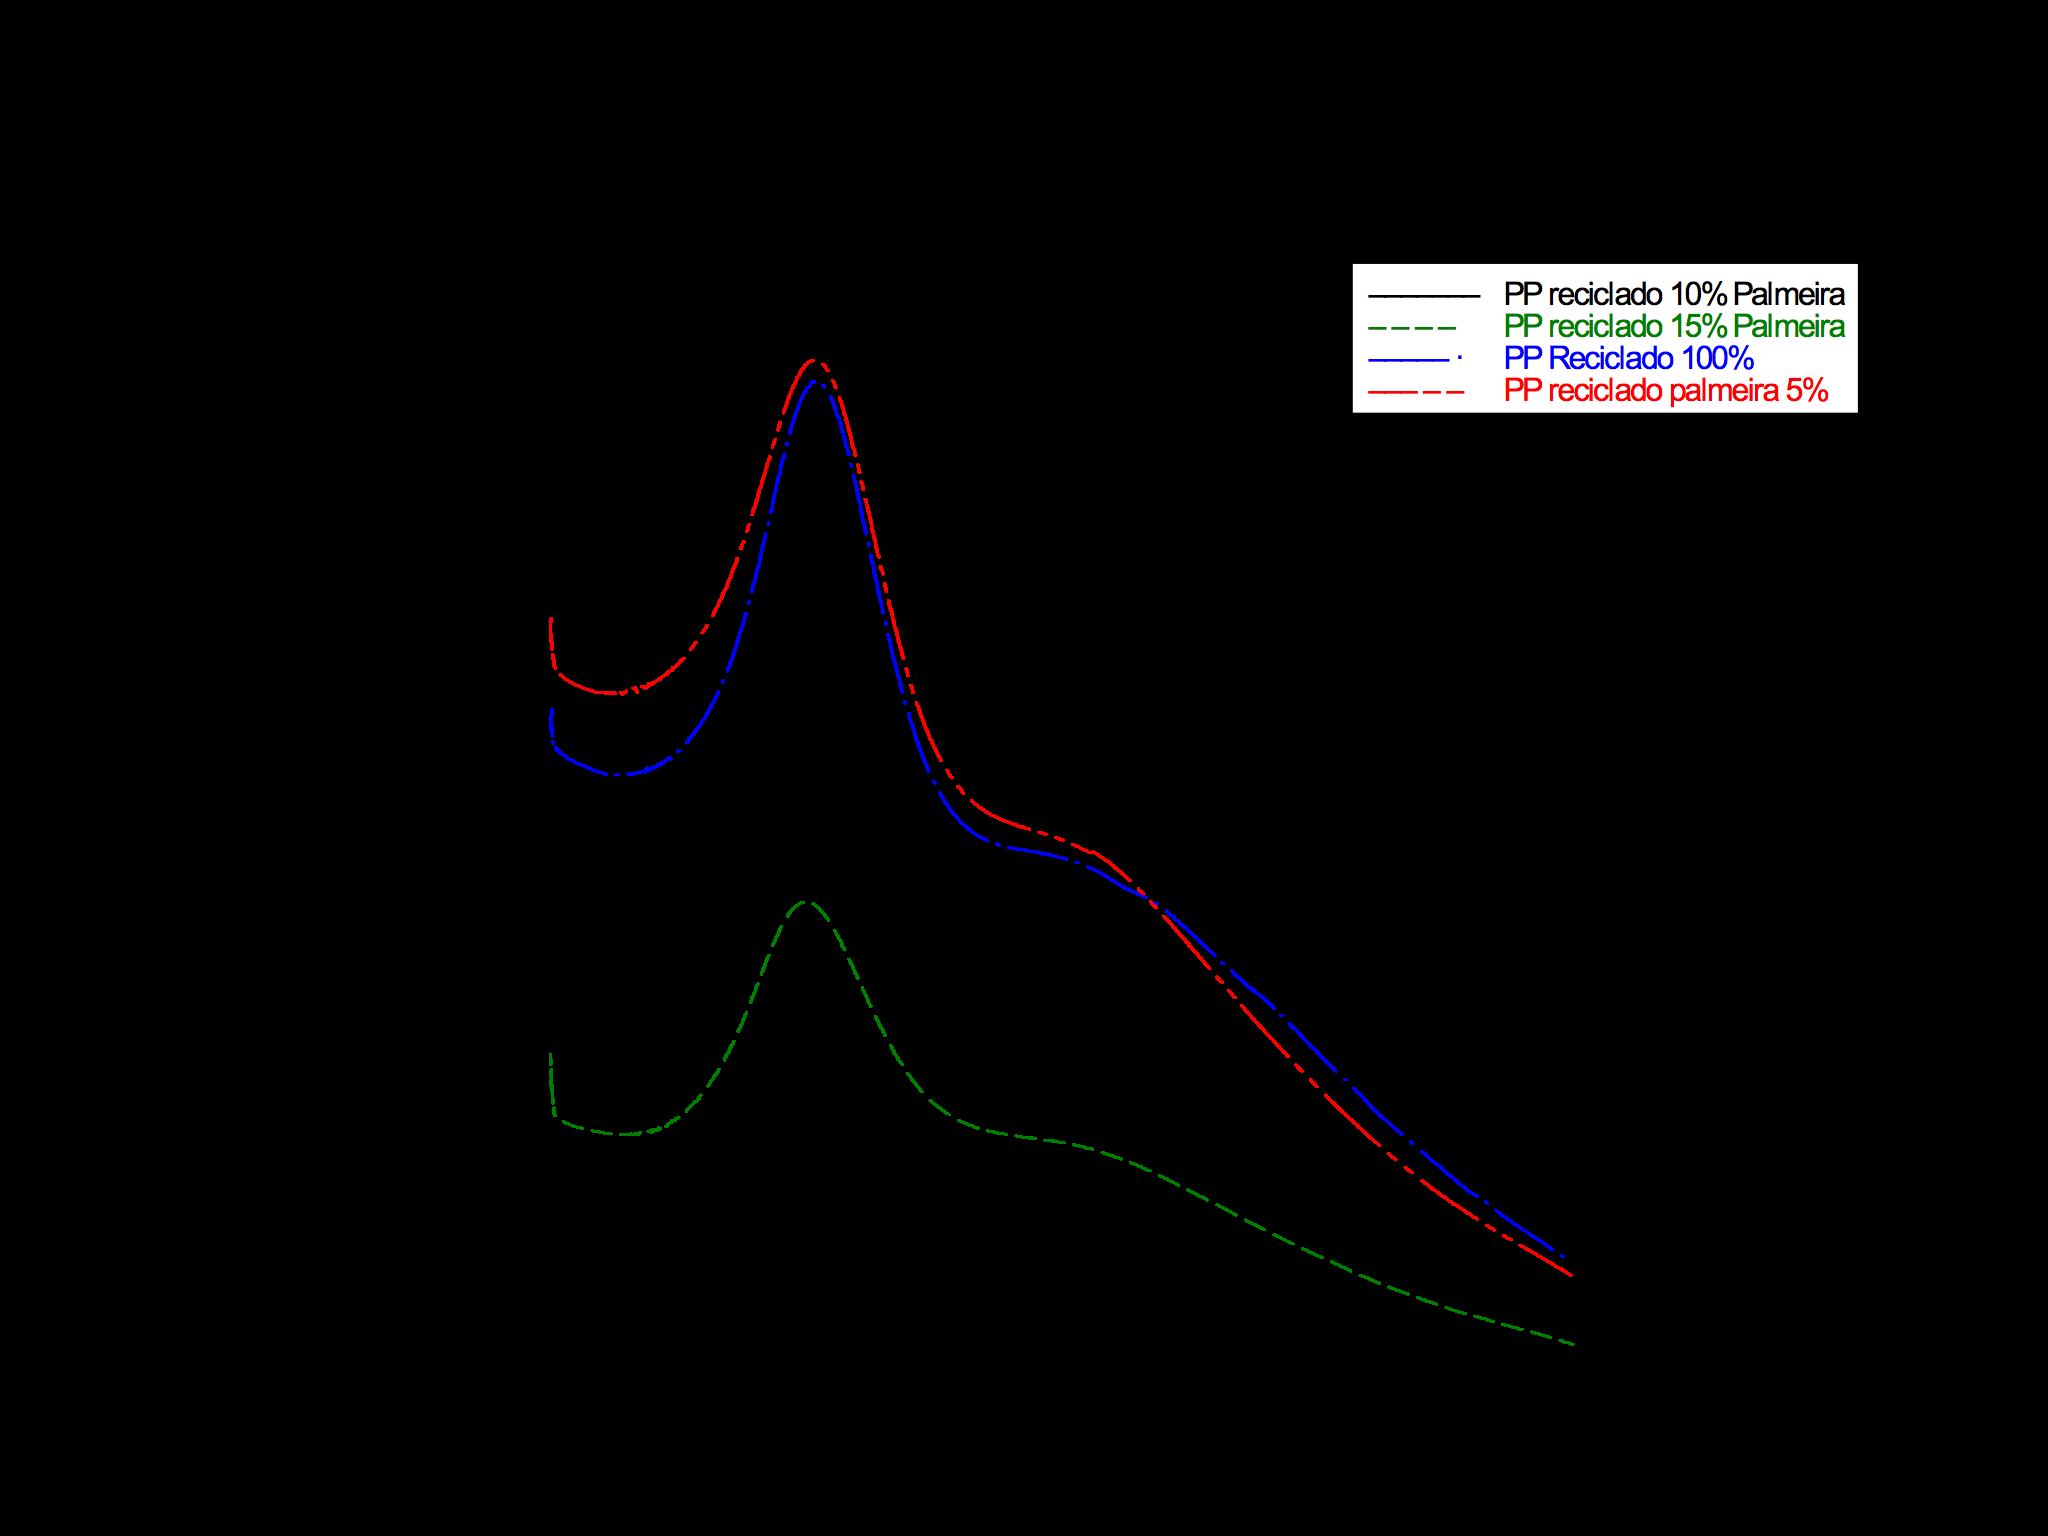 " IX Congresso Brasileiro de Análise Térmica e Calorimetria Figura 5 - Comparação das curvas módulo de perda (E ) em função da temperatura para compósitos PP reciclado com diferentes teores de folhas